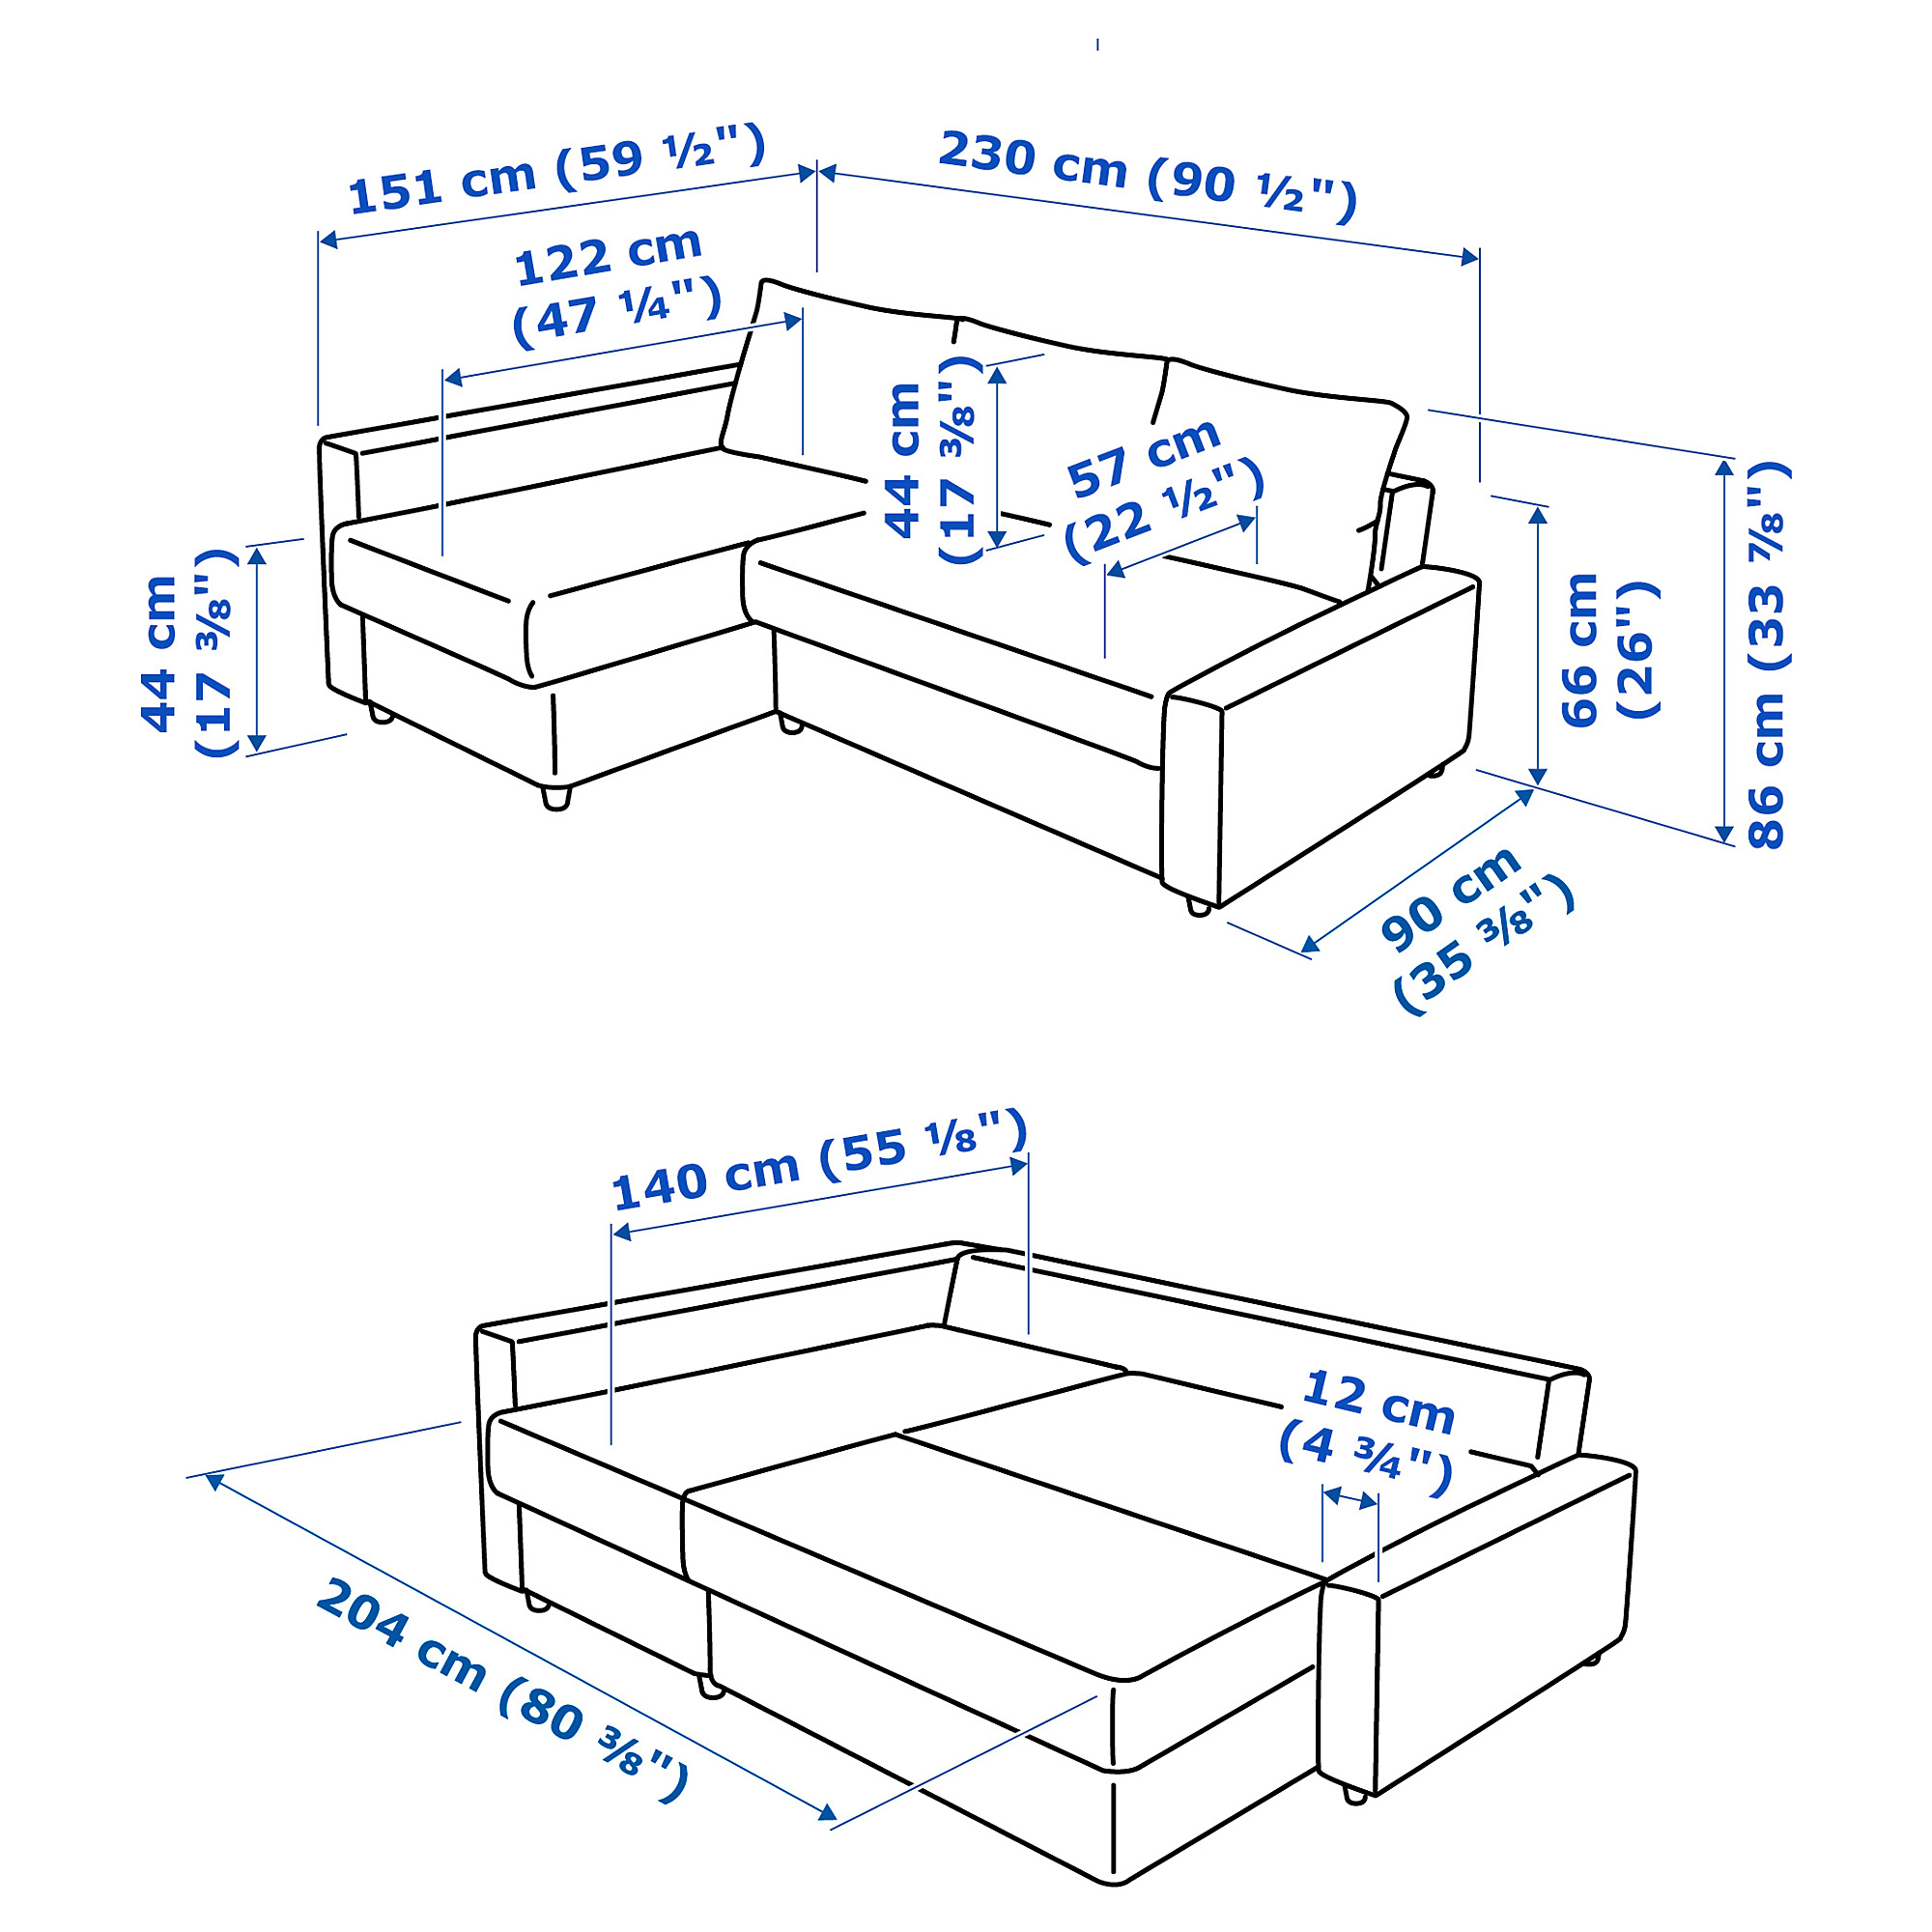 FRIHETEN corner sofa-bed with storage